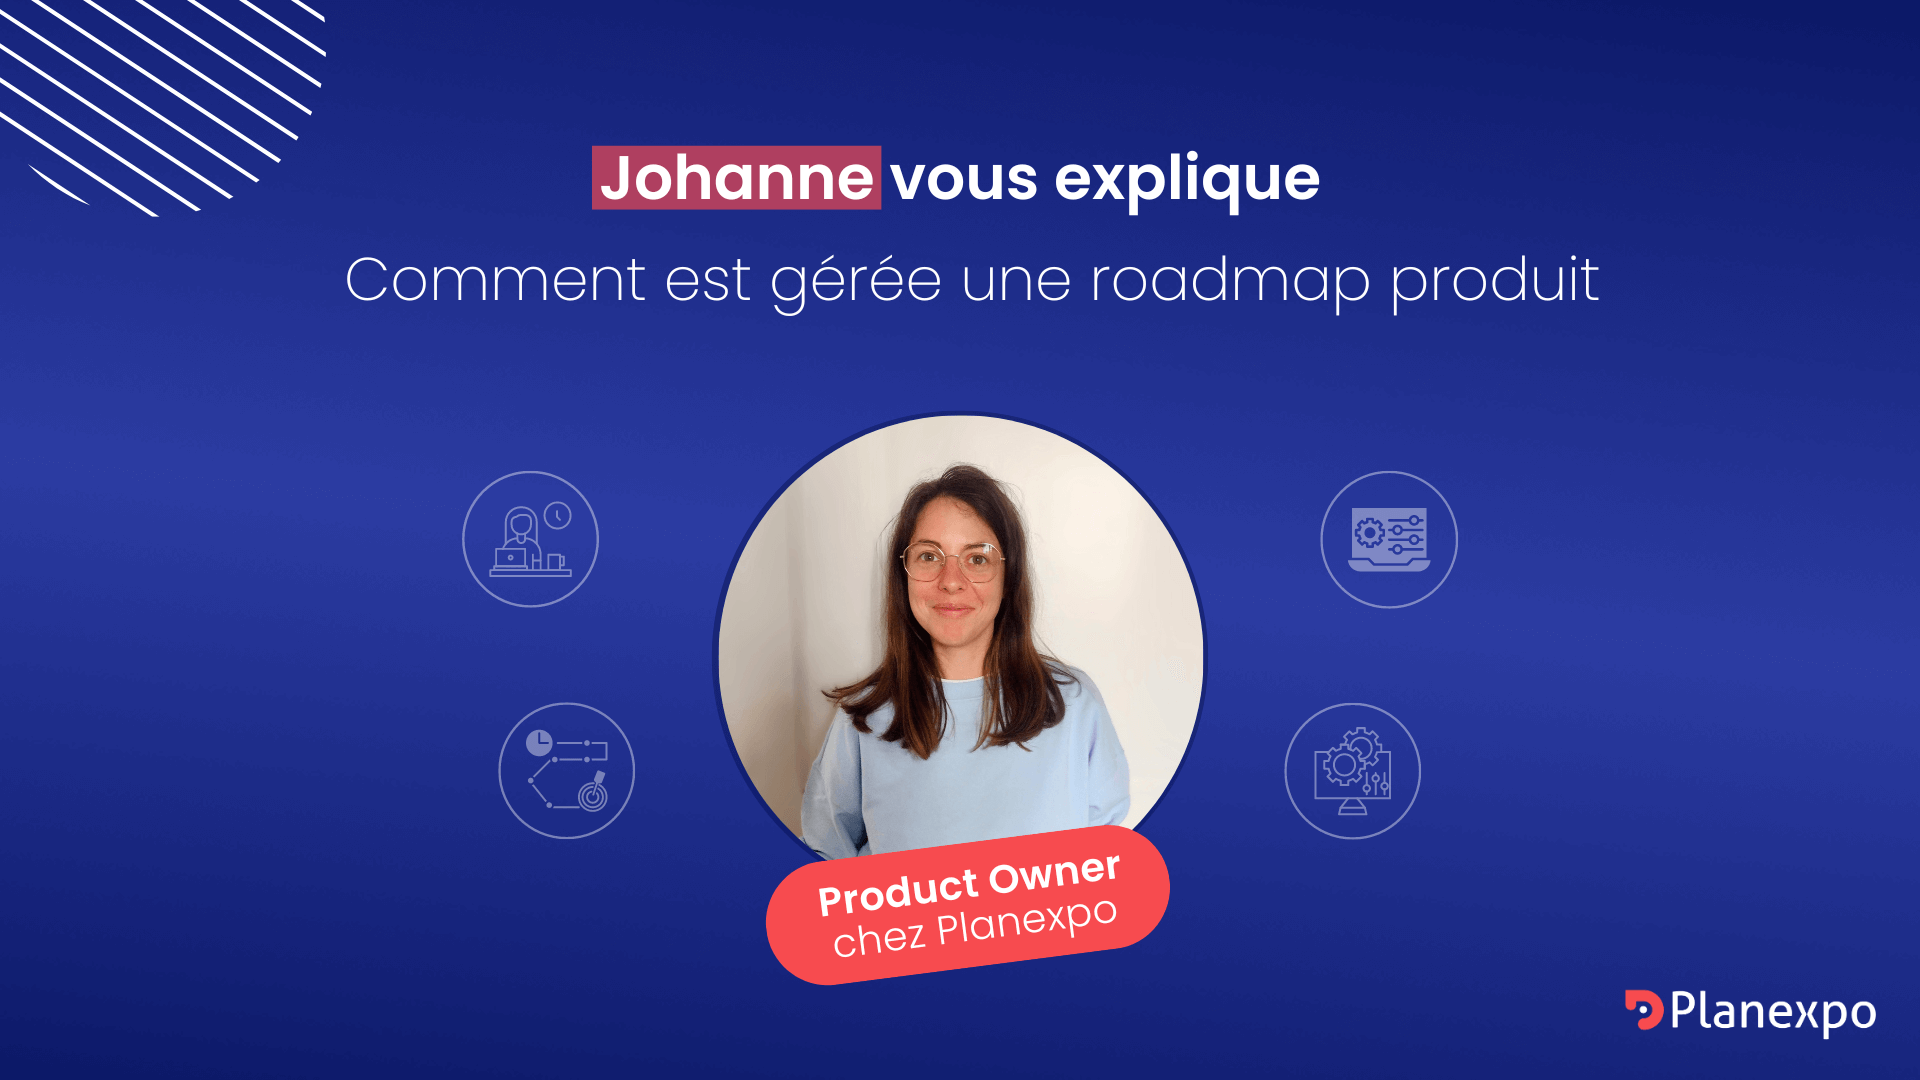 Visuel de présentation "comment est gérée une roadmap produit" avec une photo de Johanne et son poste de Product Owner chez Planexpo